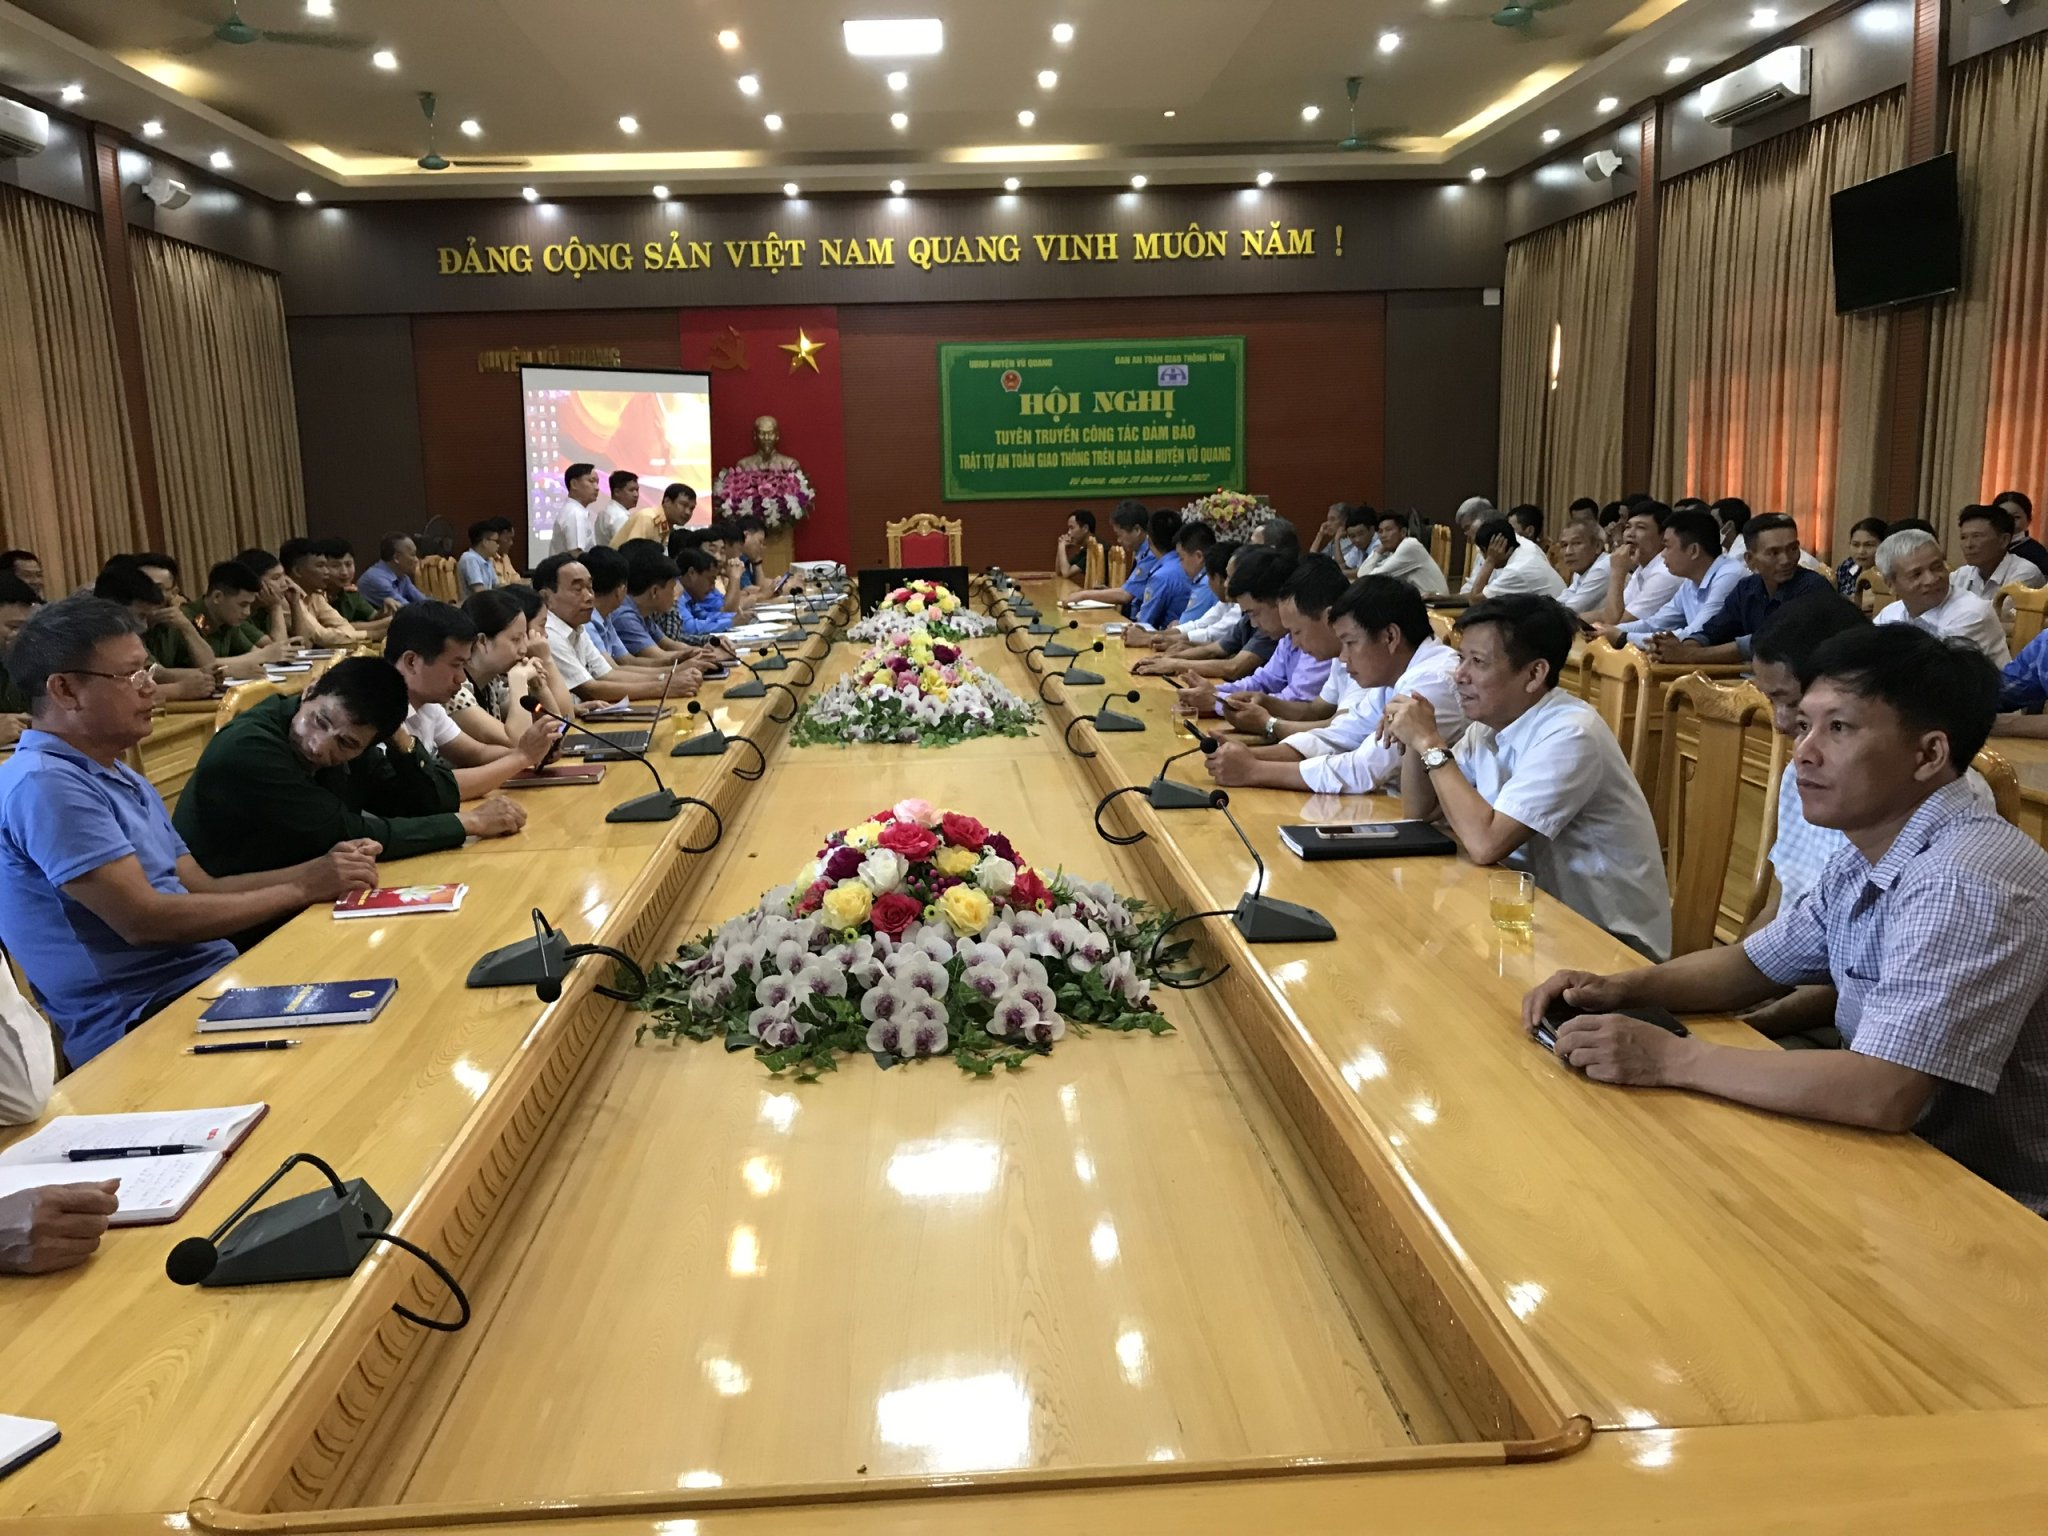 Thanh tra Sở GTVT Hà Tĩnh:  Hơn 300 cán bộ các cấp ở Vũ Quang được tập huấn nâng cao kiến thức pháp luật về an toàn giao thông